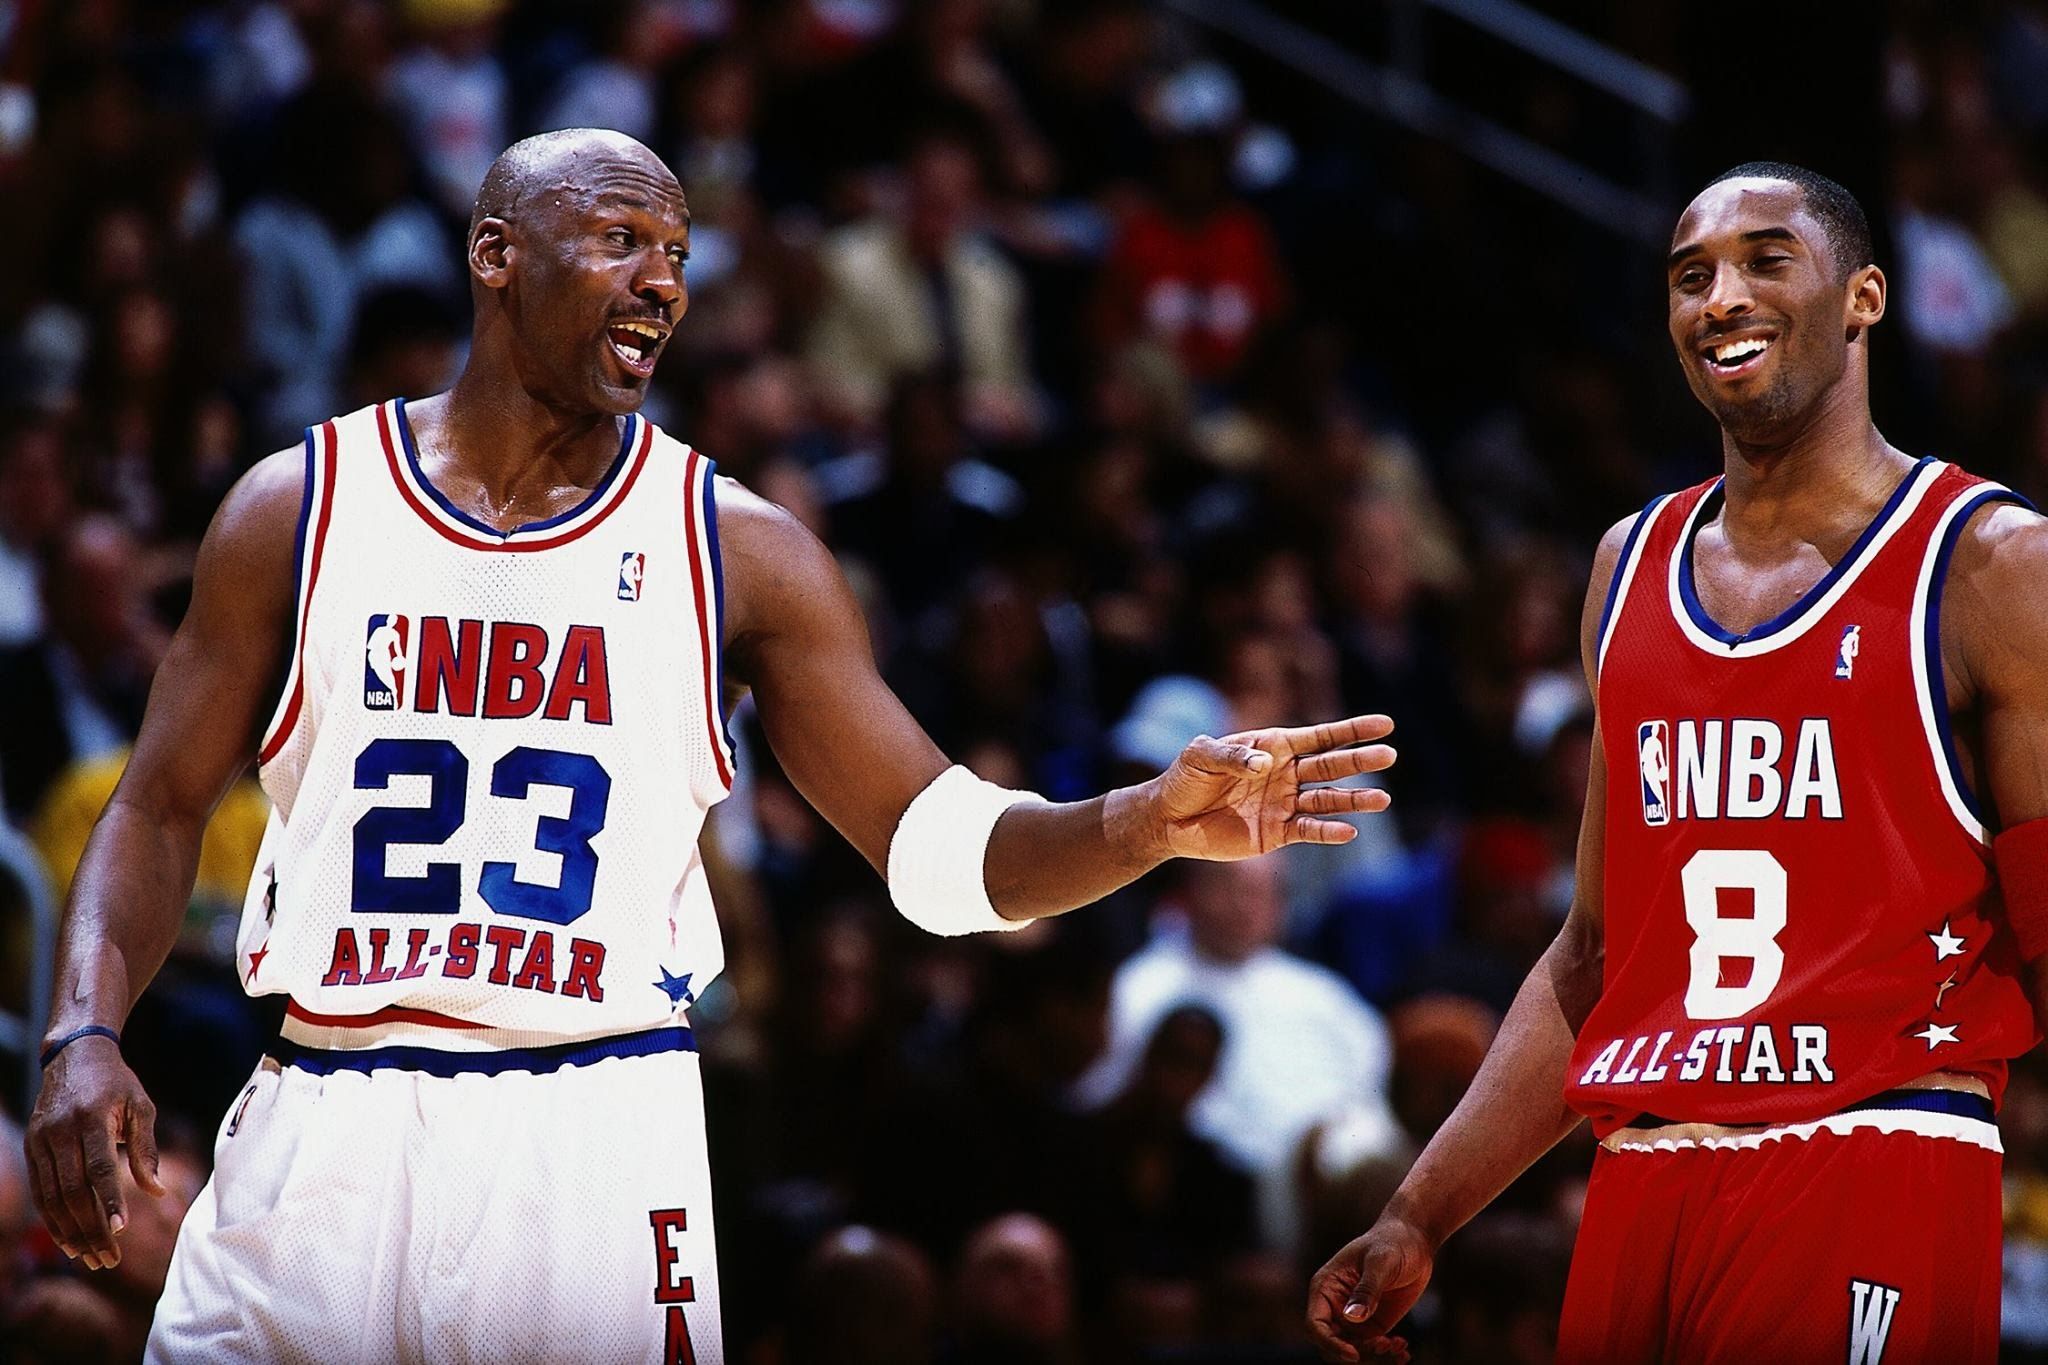 10 leggendari NBA All Star Game (più uno)